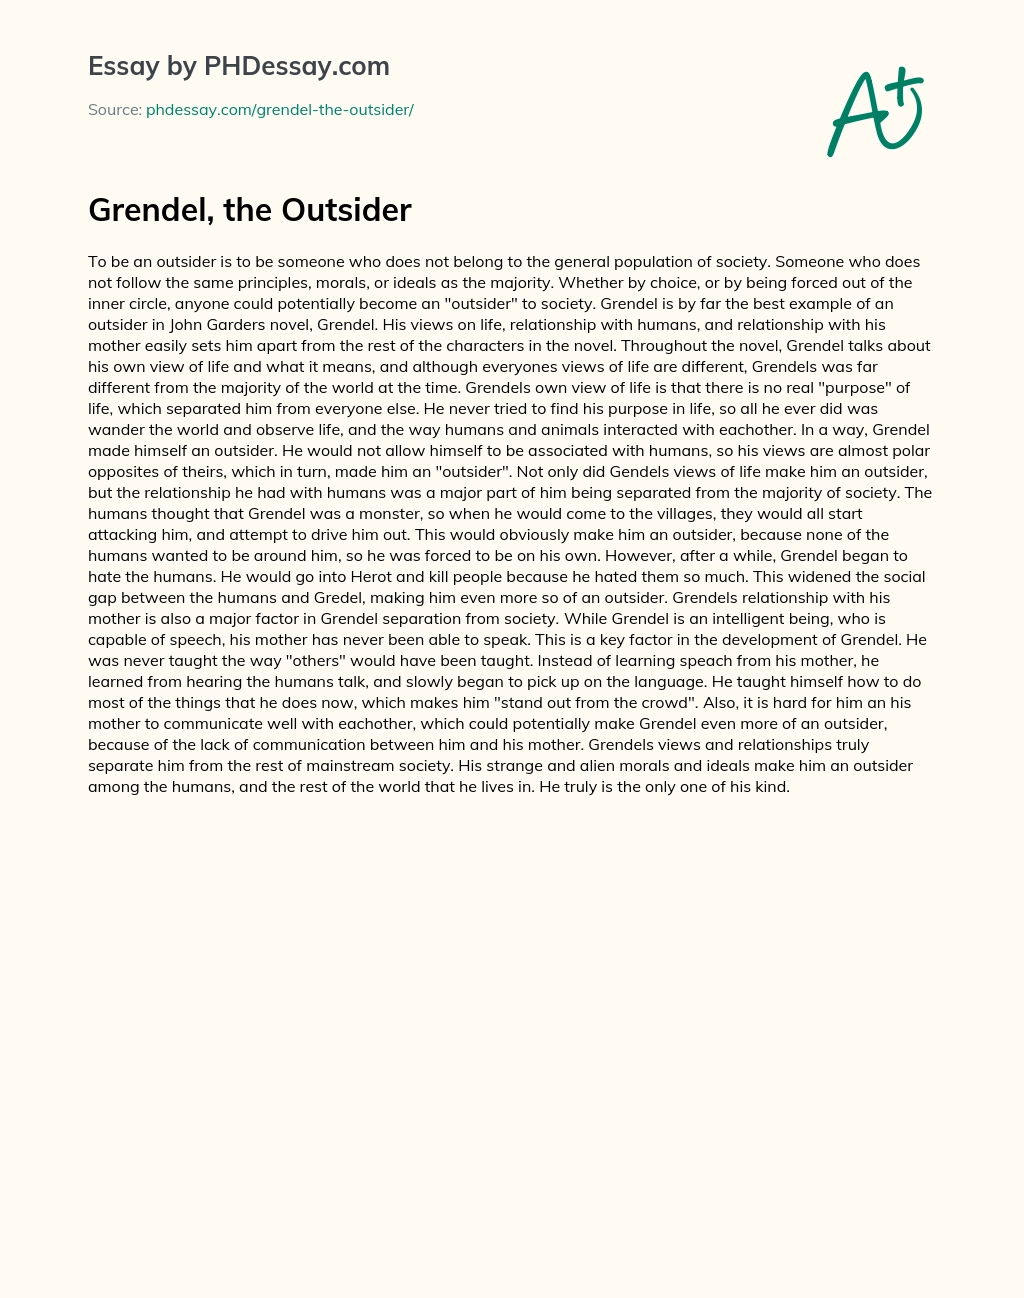 Grendel, the Outsider essay